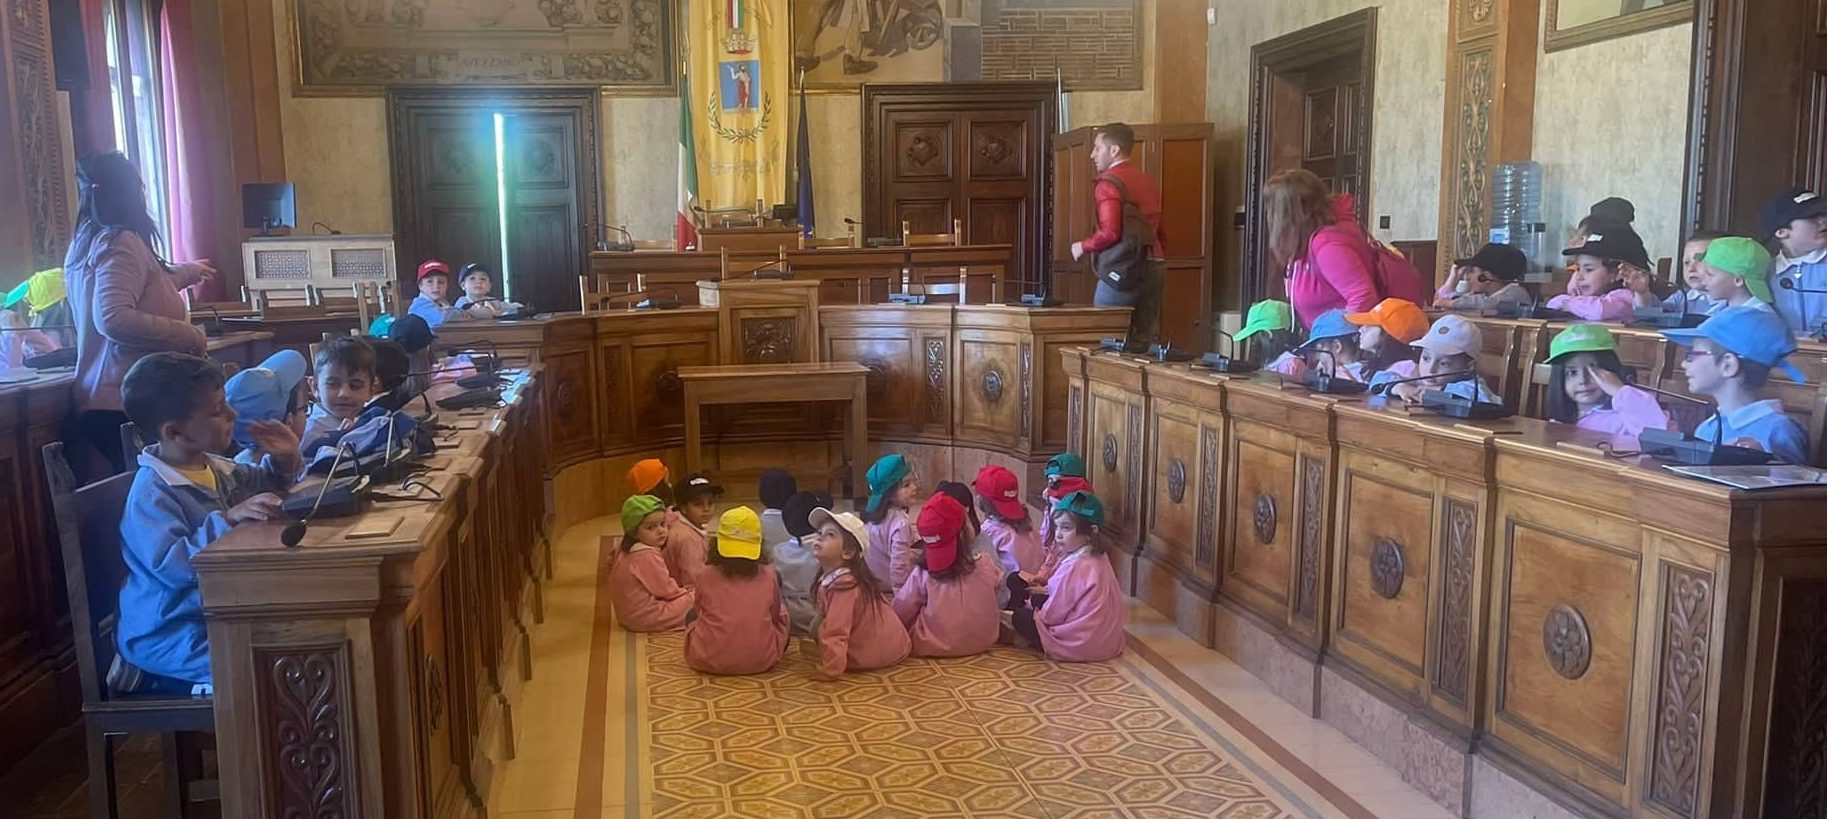 Piccoli alunni della scuola dell'infanzia "San Giovanni" in gita al Palazzo comunale di Avezzano